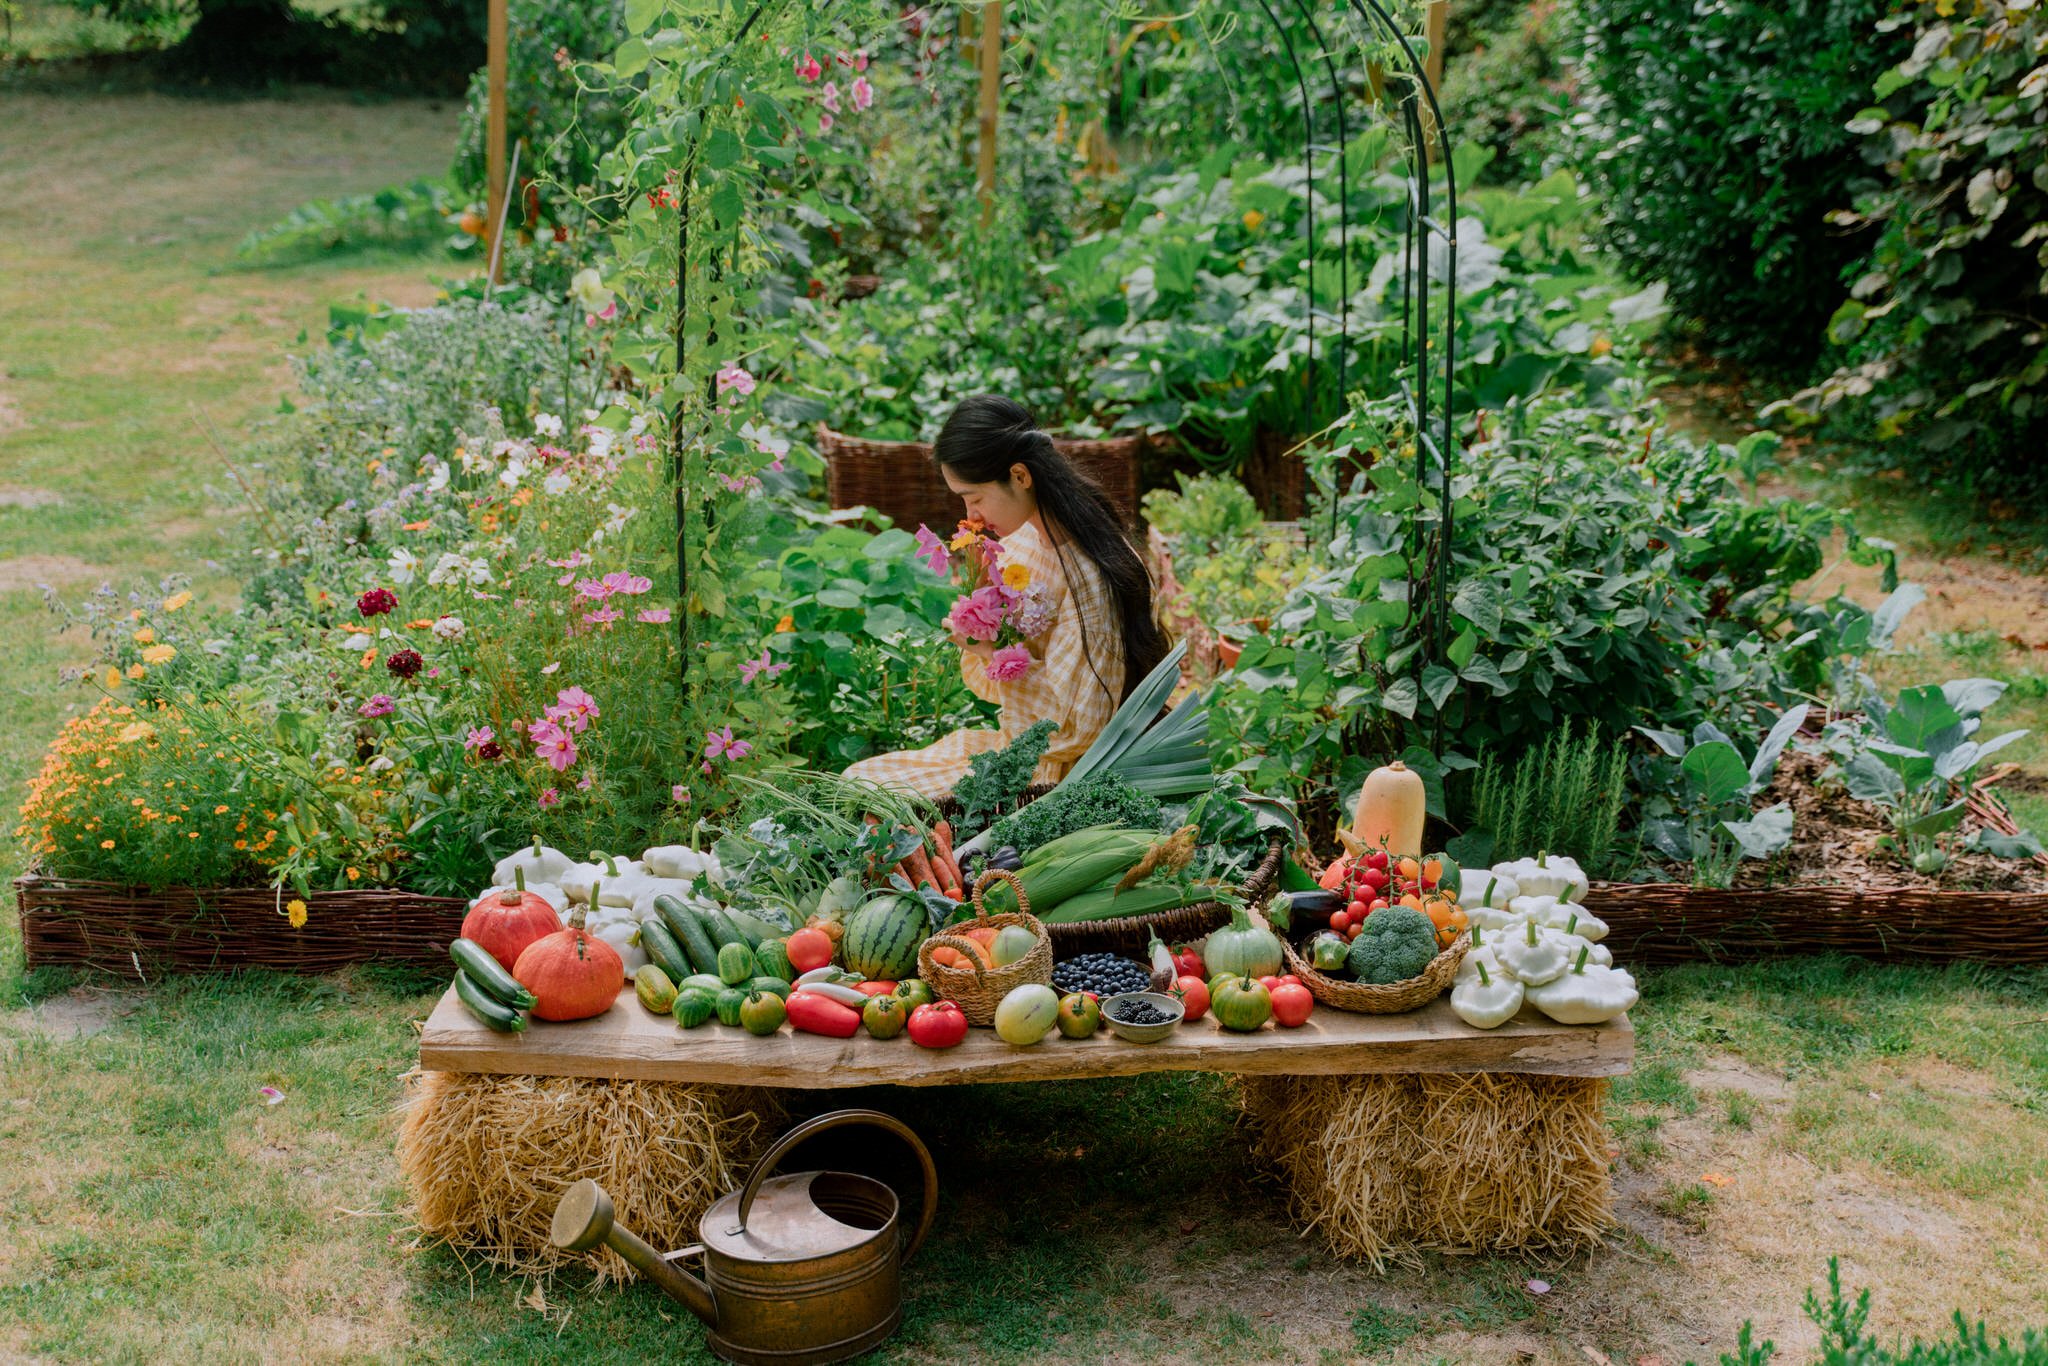 Vegetable Garden 2022 - Her86m2 - 475.jpg